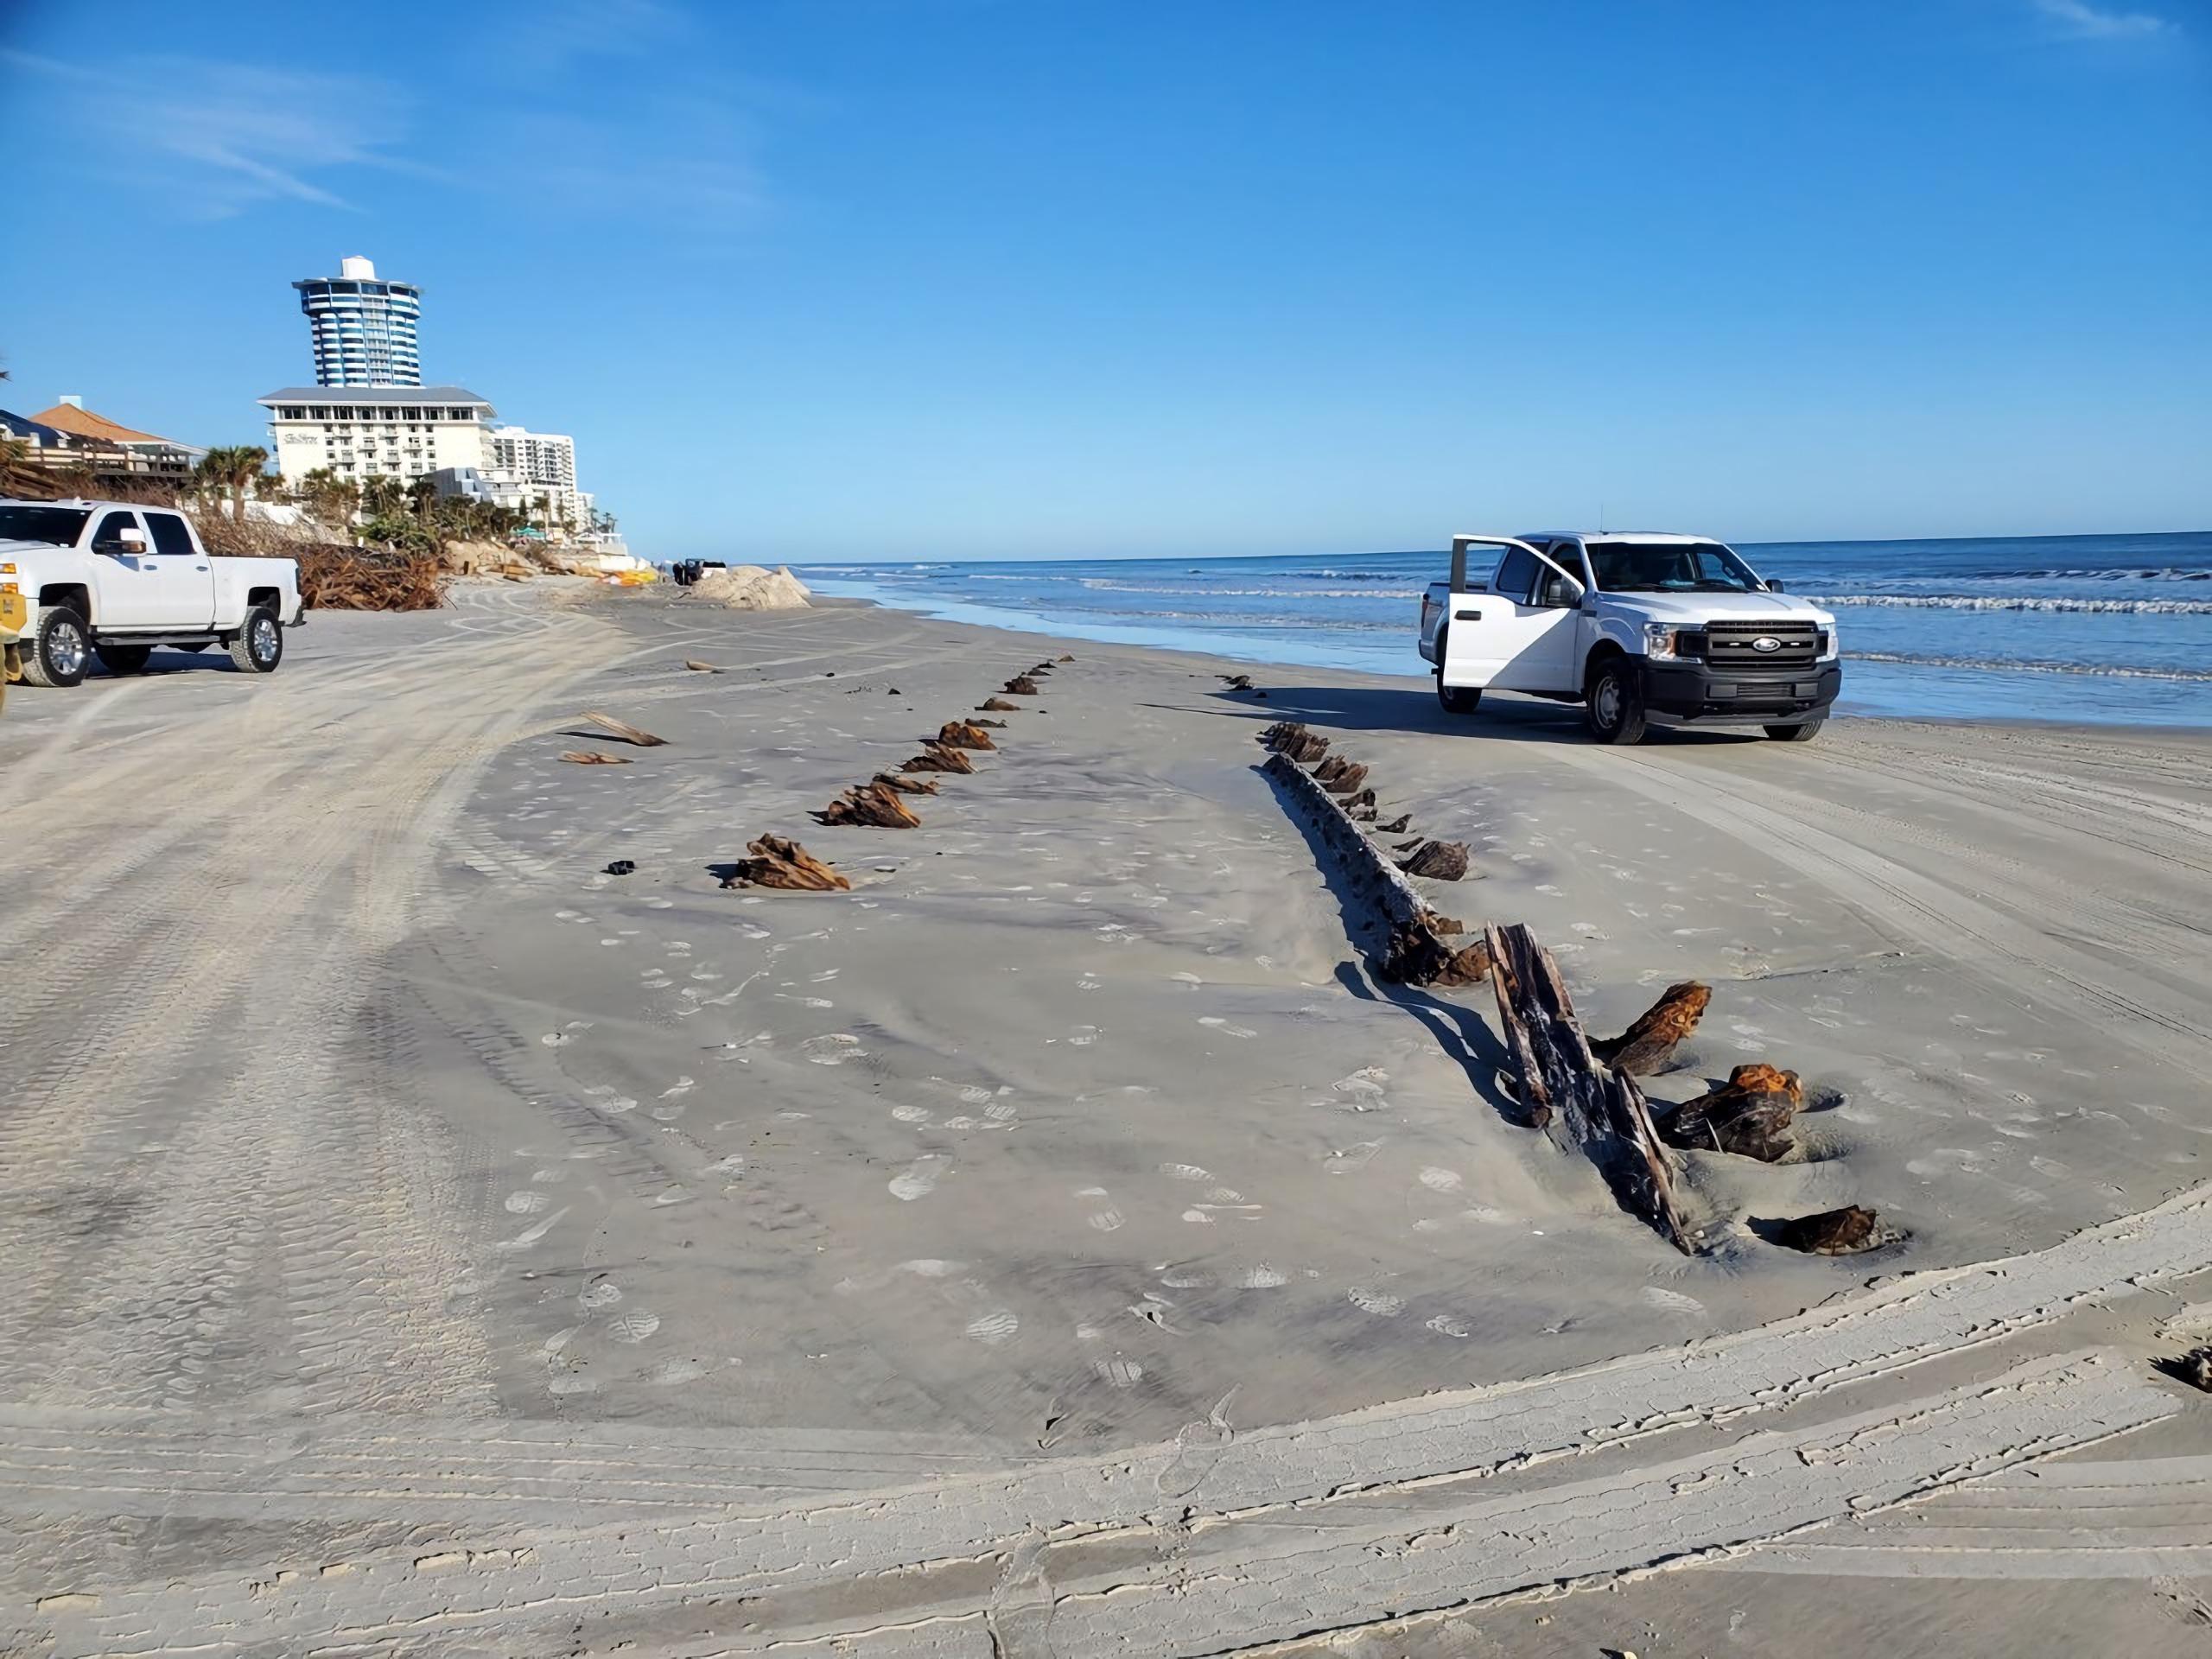 Fotografía cedida por Volusia Beach Safety donde se muestra una vista de los restos de un misterioso objeto, que consisten en un par de hileras de madera que sobresalen de la arena en la playa de Daytona Beach en Florida, en Estados Unidos. (EFE/Volusia Beach Safety)